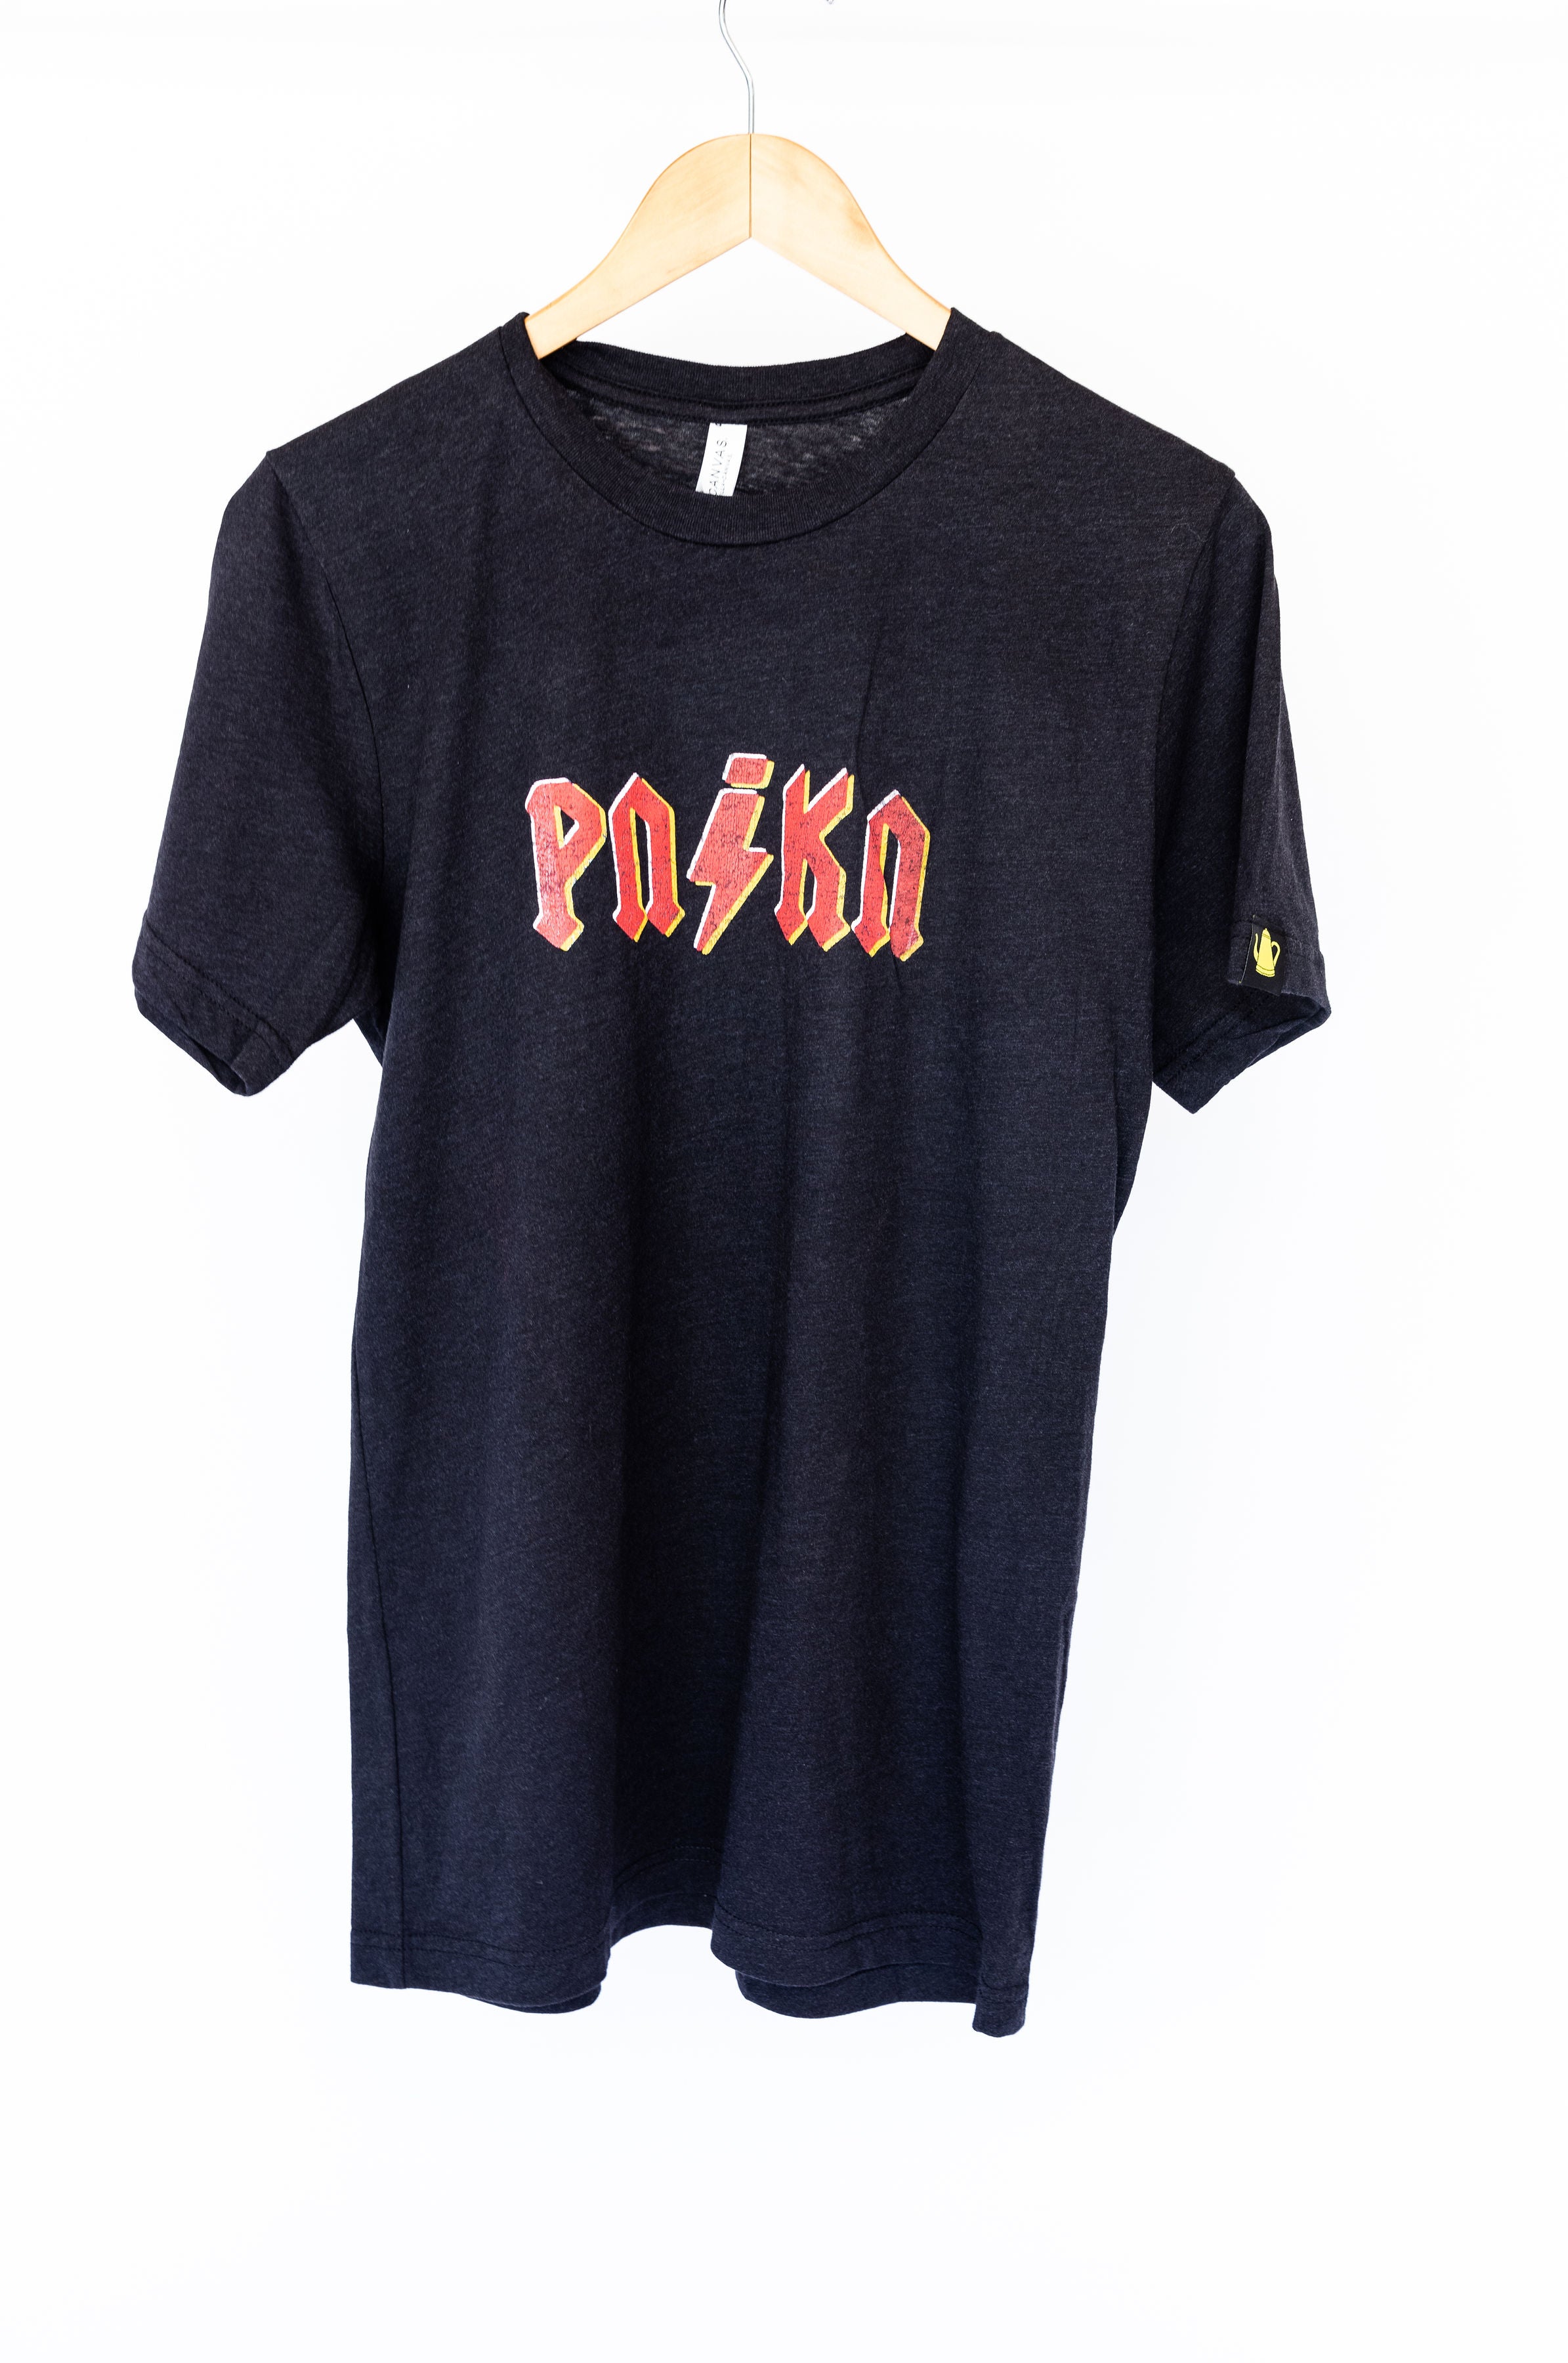 PNiKN T-shirt